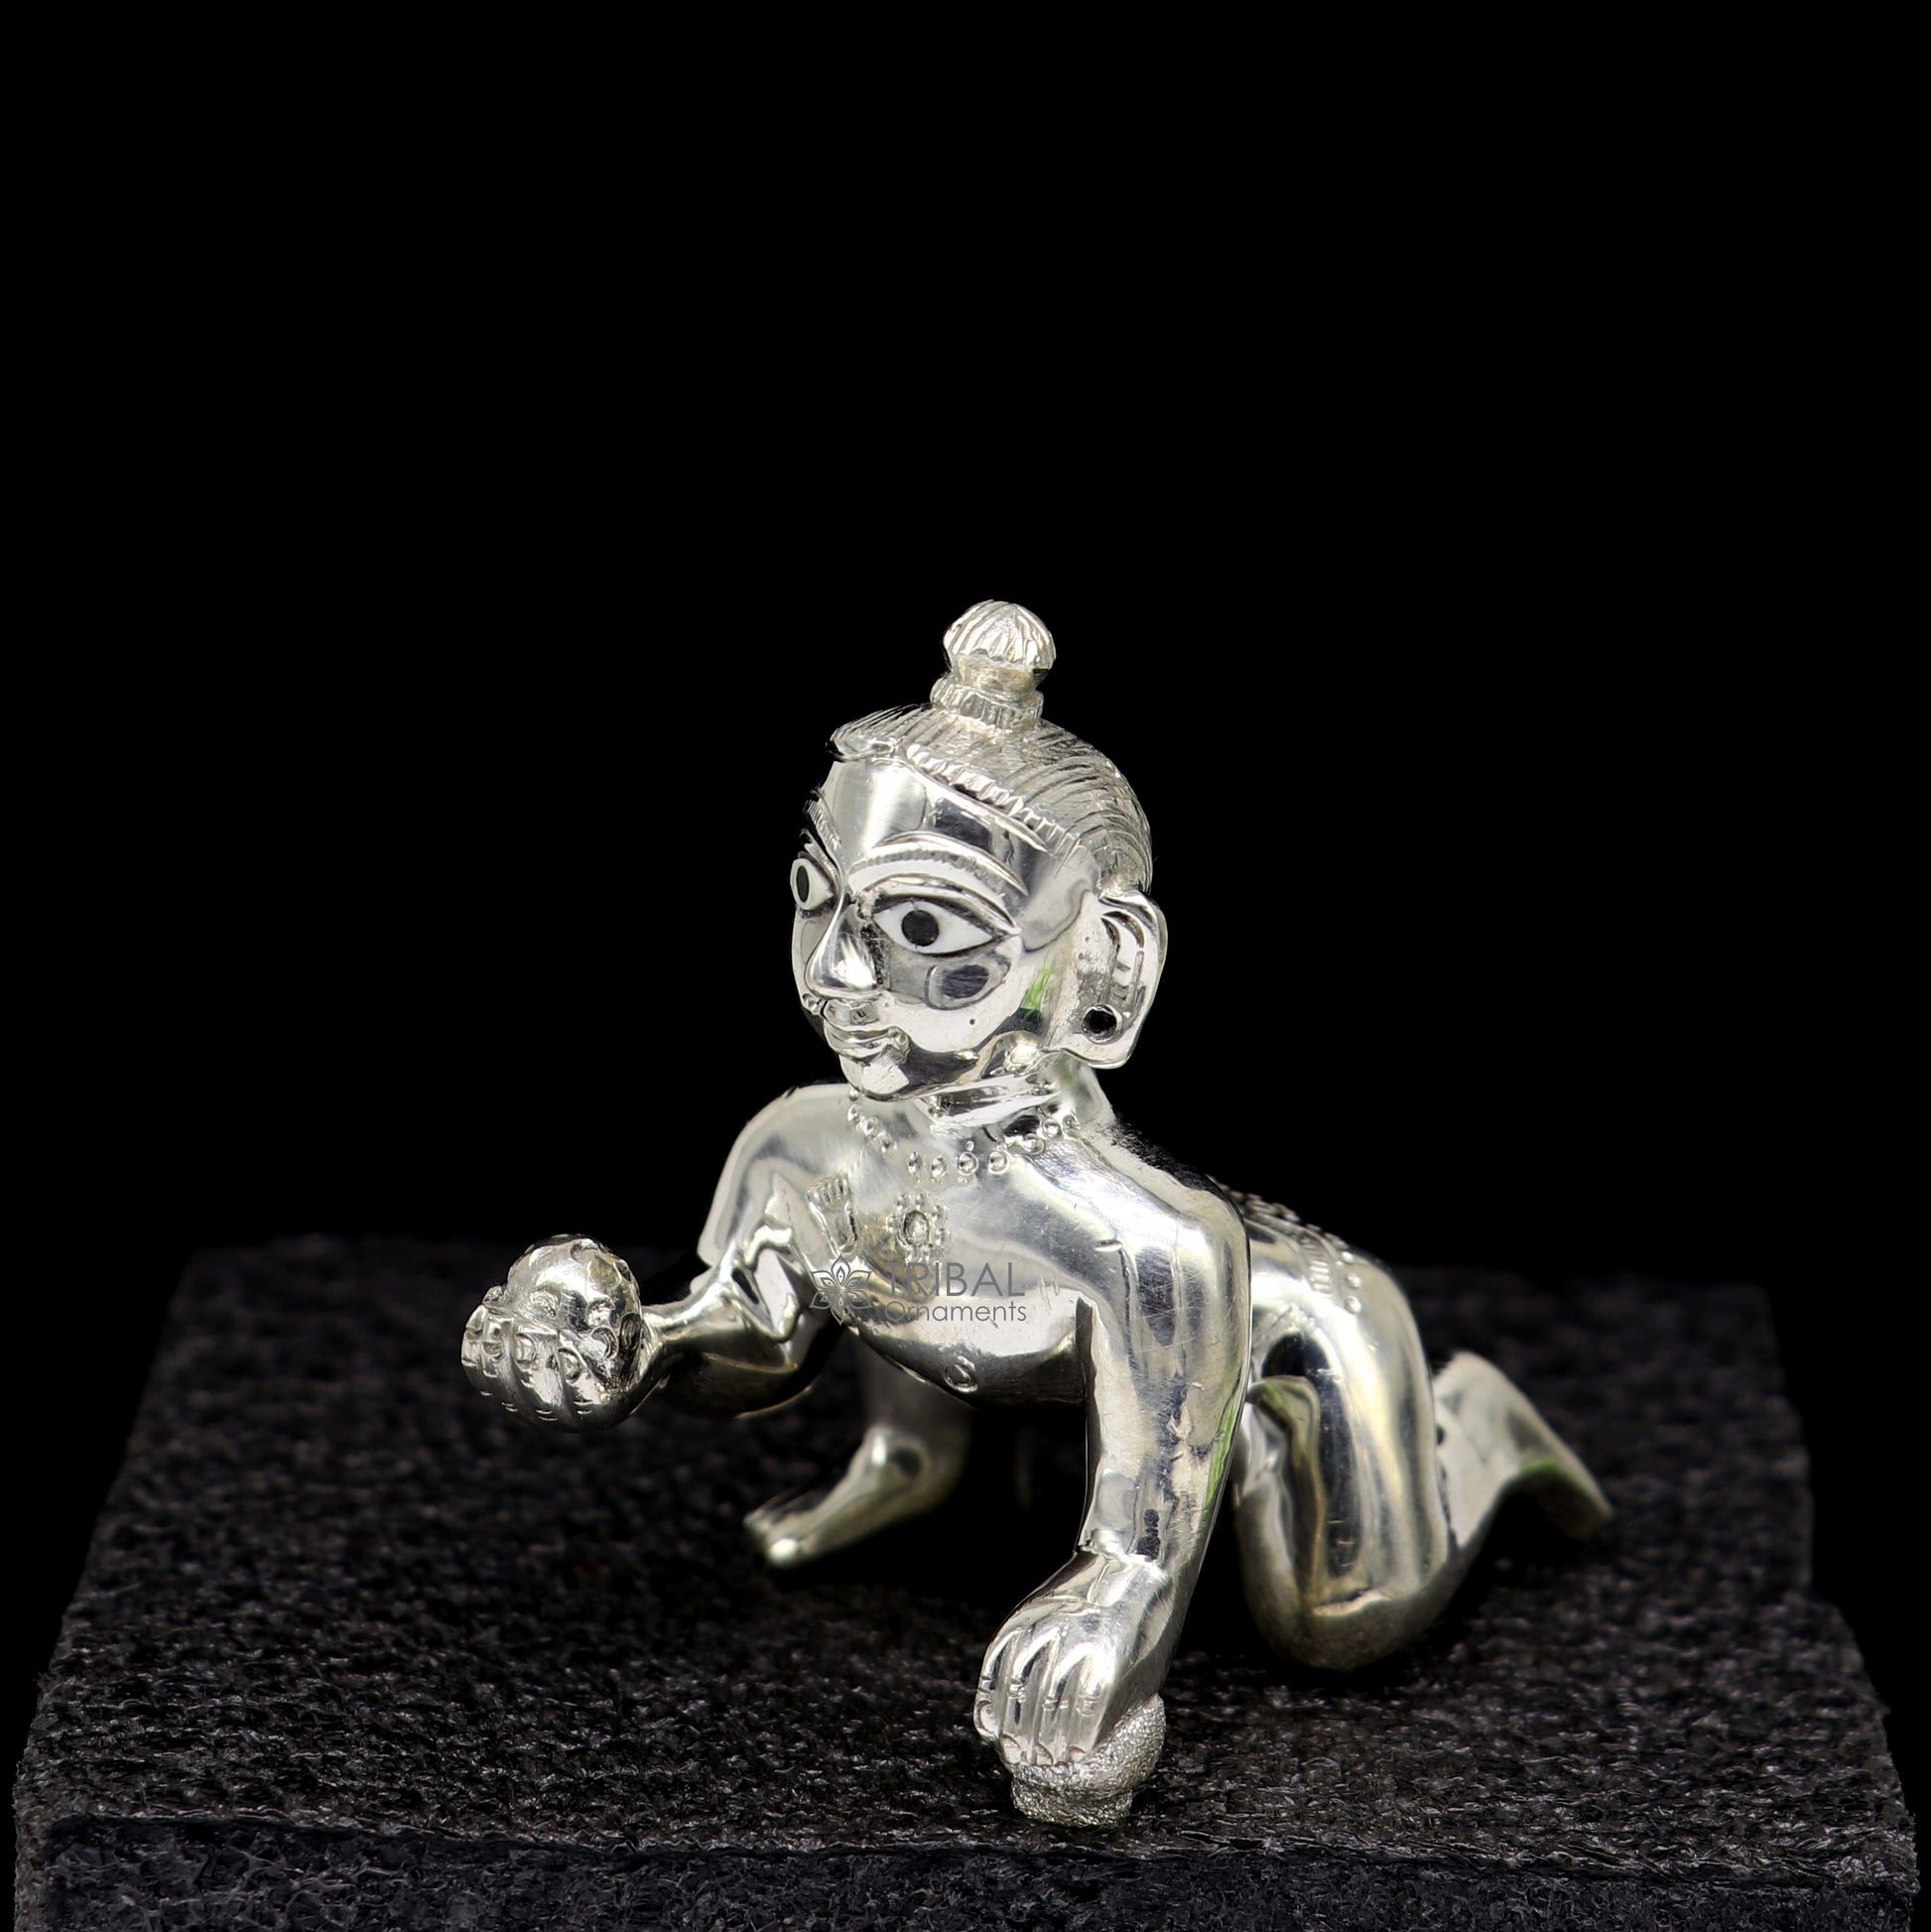 Divine 925 sterling Solid silver handmade idol Krishna, Ladu Gopal, crawling Krishna small statue sculpture home temple puja art art495 - TRIBAL ORNAMENTS